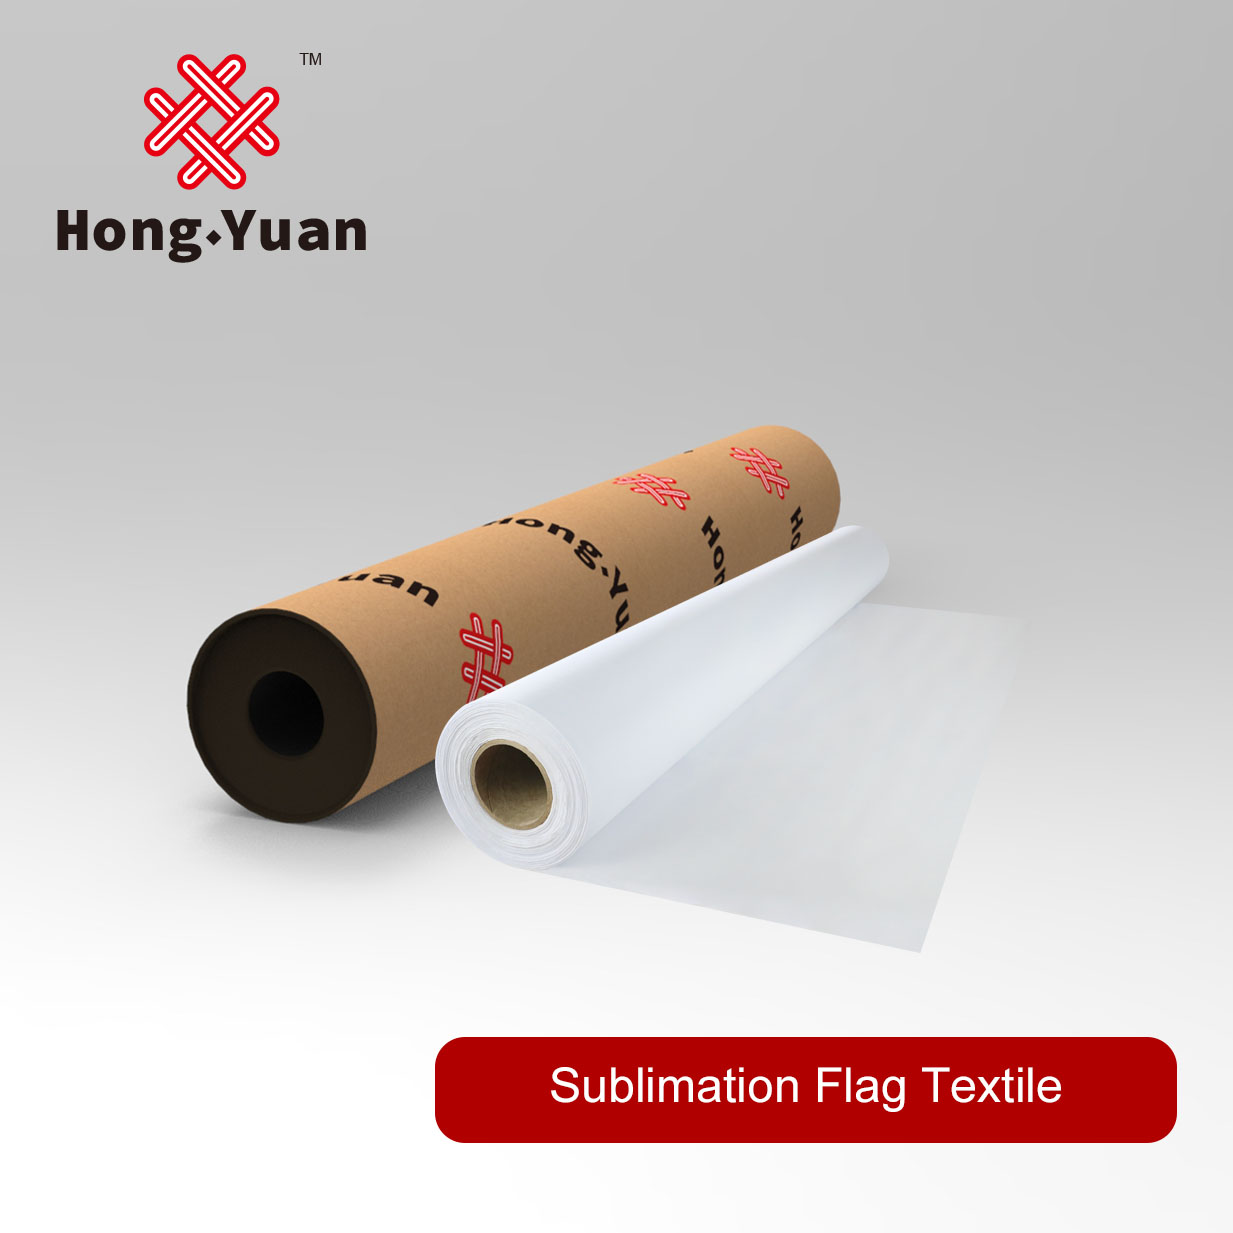 Sublimation Flag Textile SFT120